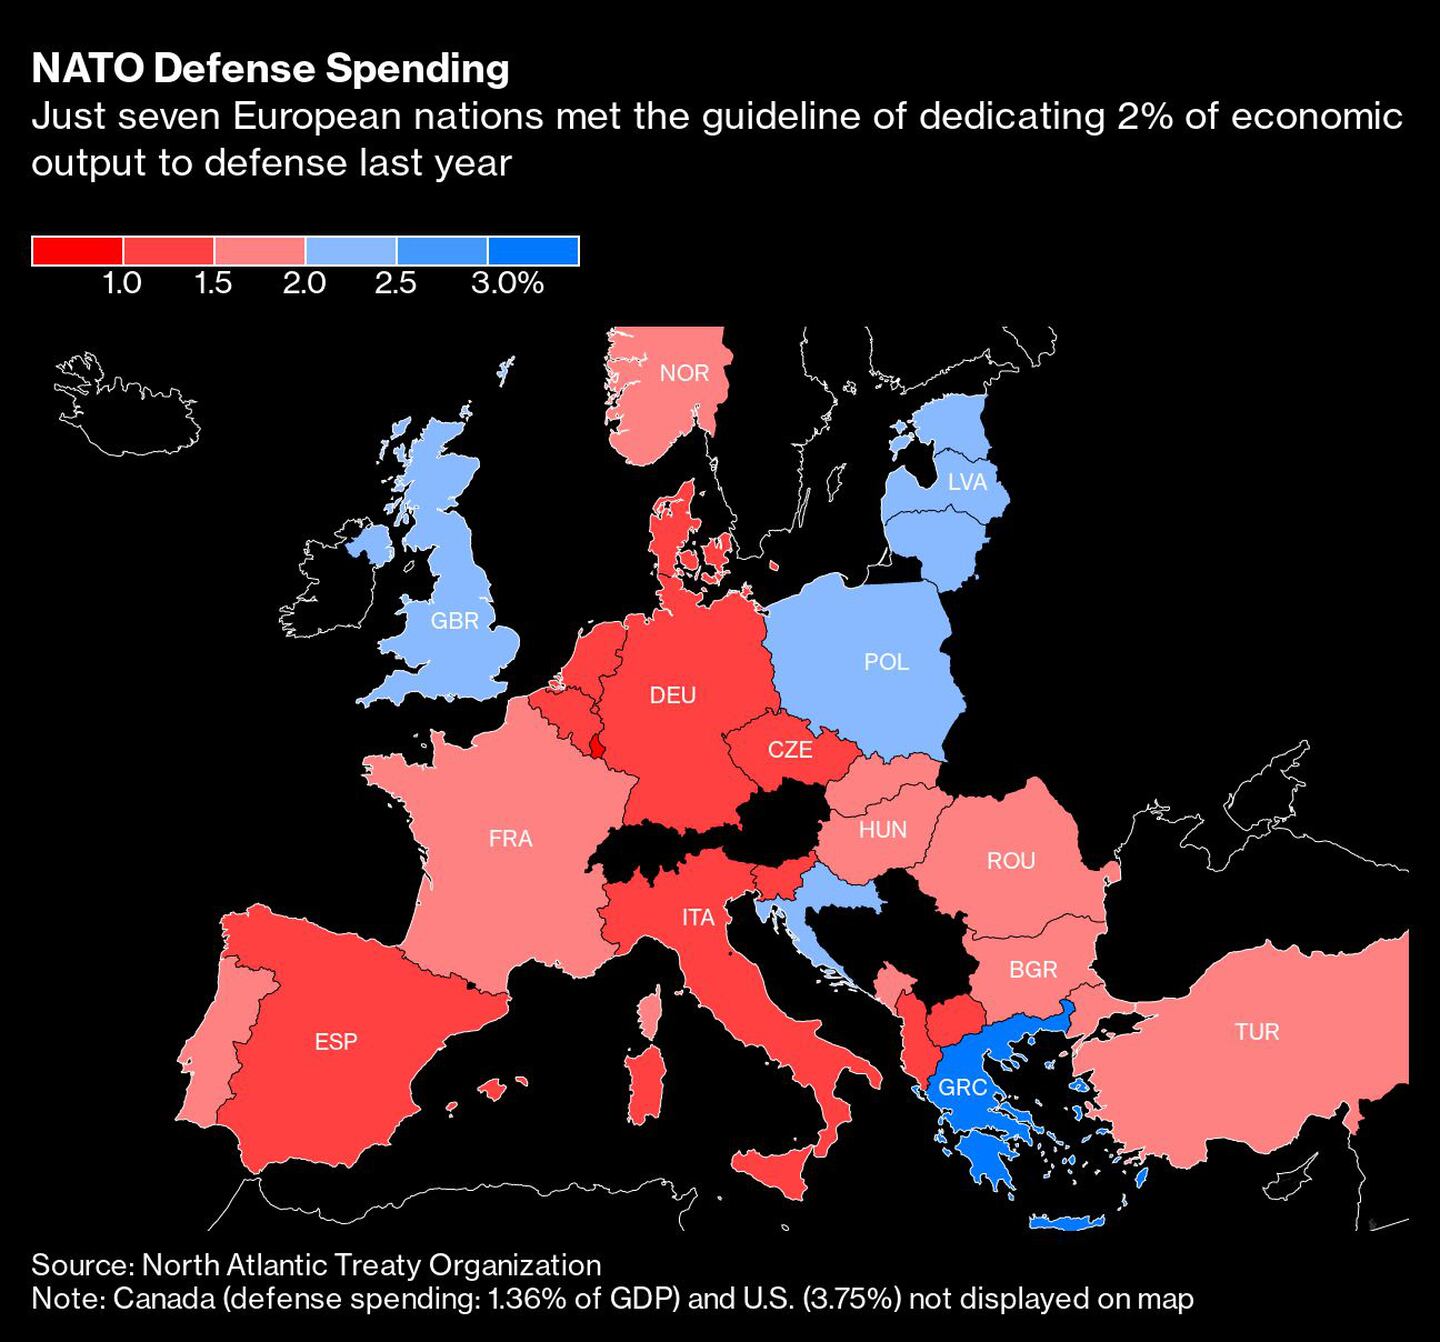  Sólo siete países europeos cumplieron la directriz de dedicar el 2% de la producción económica a la defensa el año pasadodfd